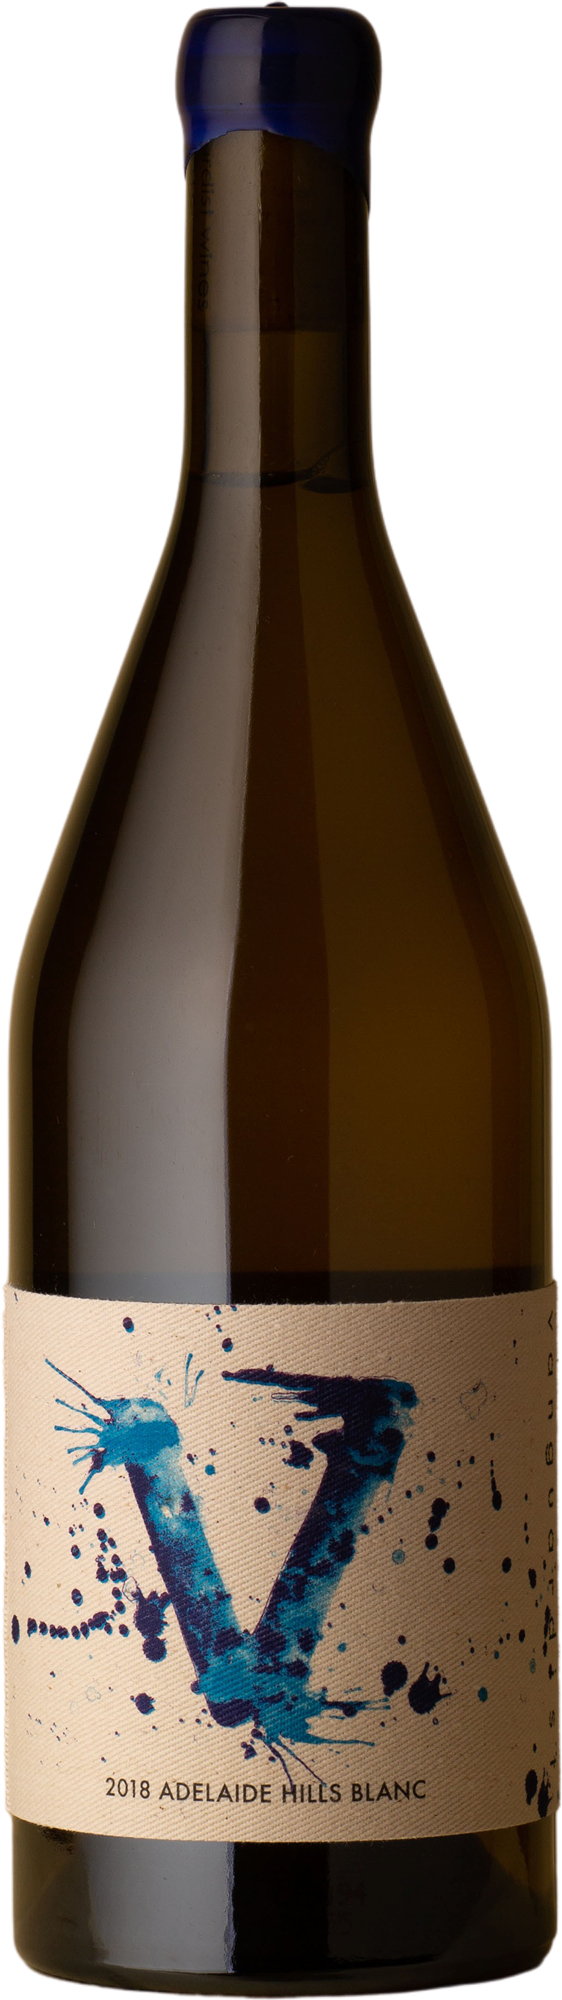 Vanguardist - White Blend 2018 White Wine